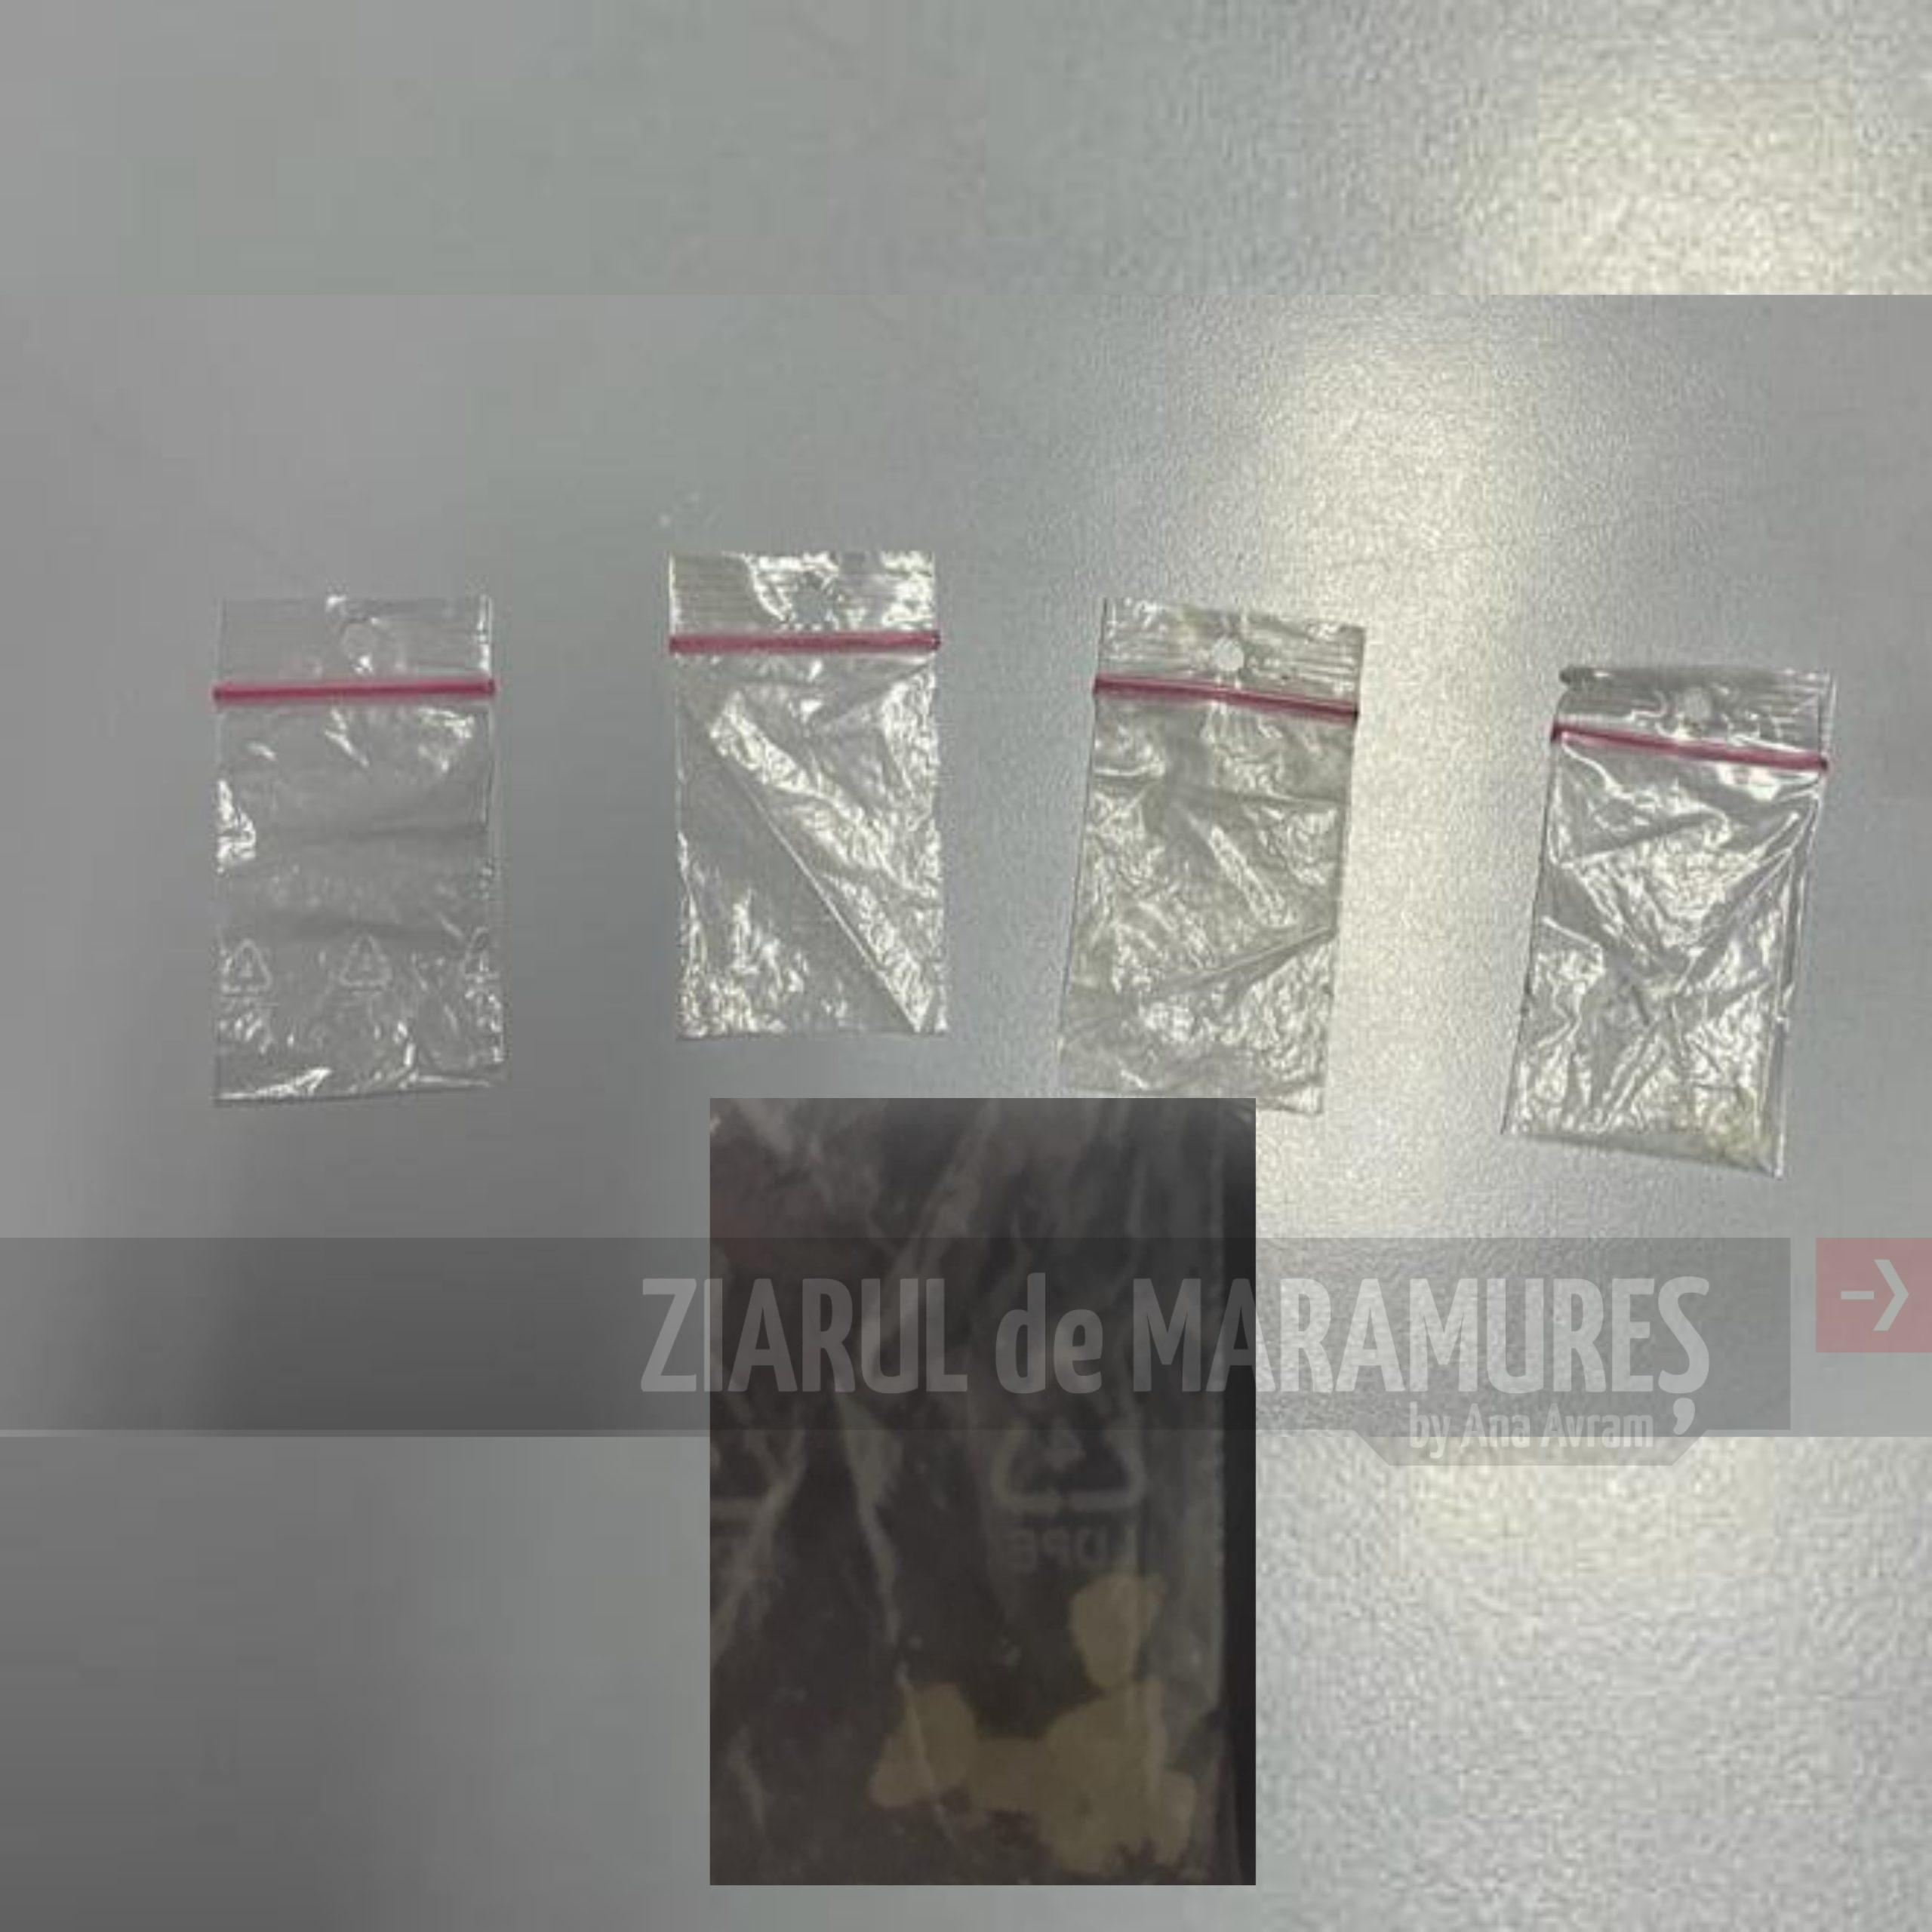 Jandarmii băimăreni au găsit mai multe plicuri cu droguri asupra unui bărbat